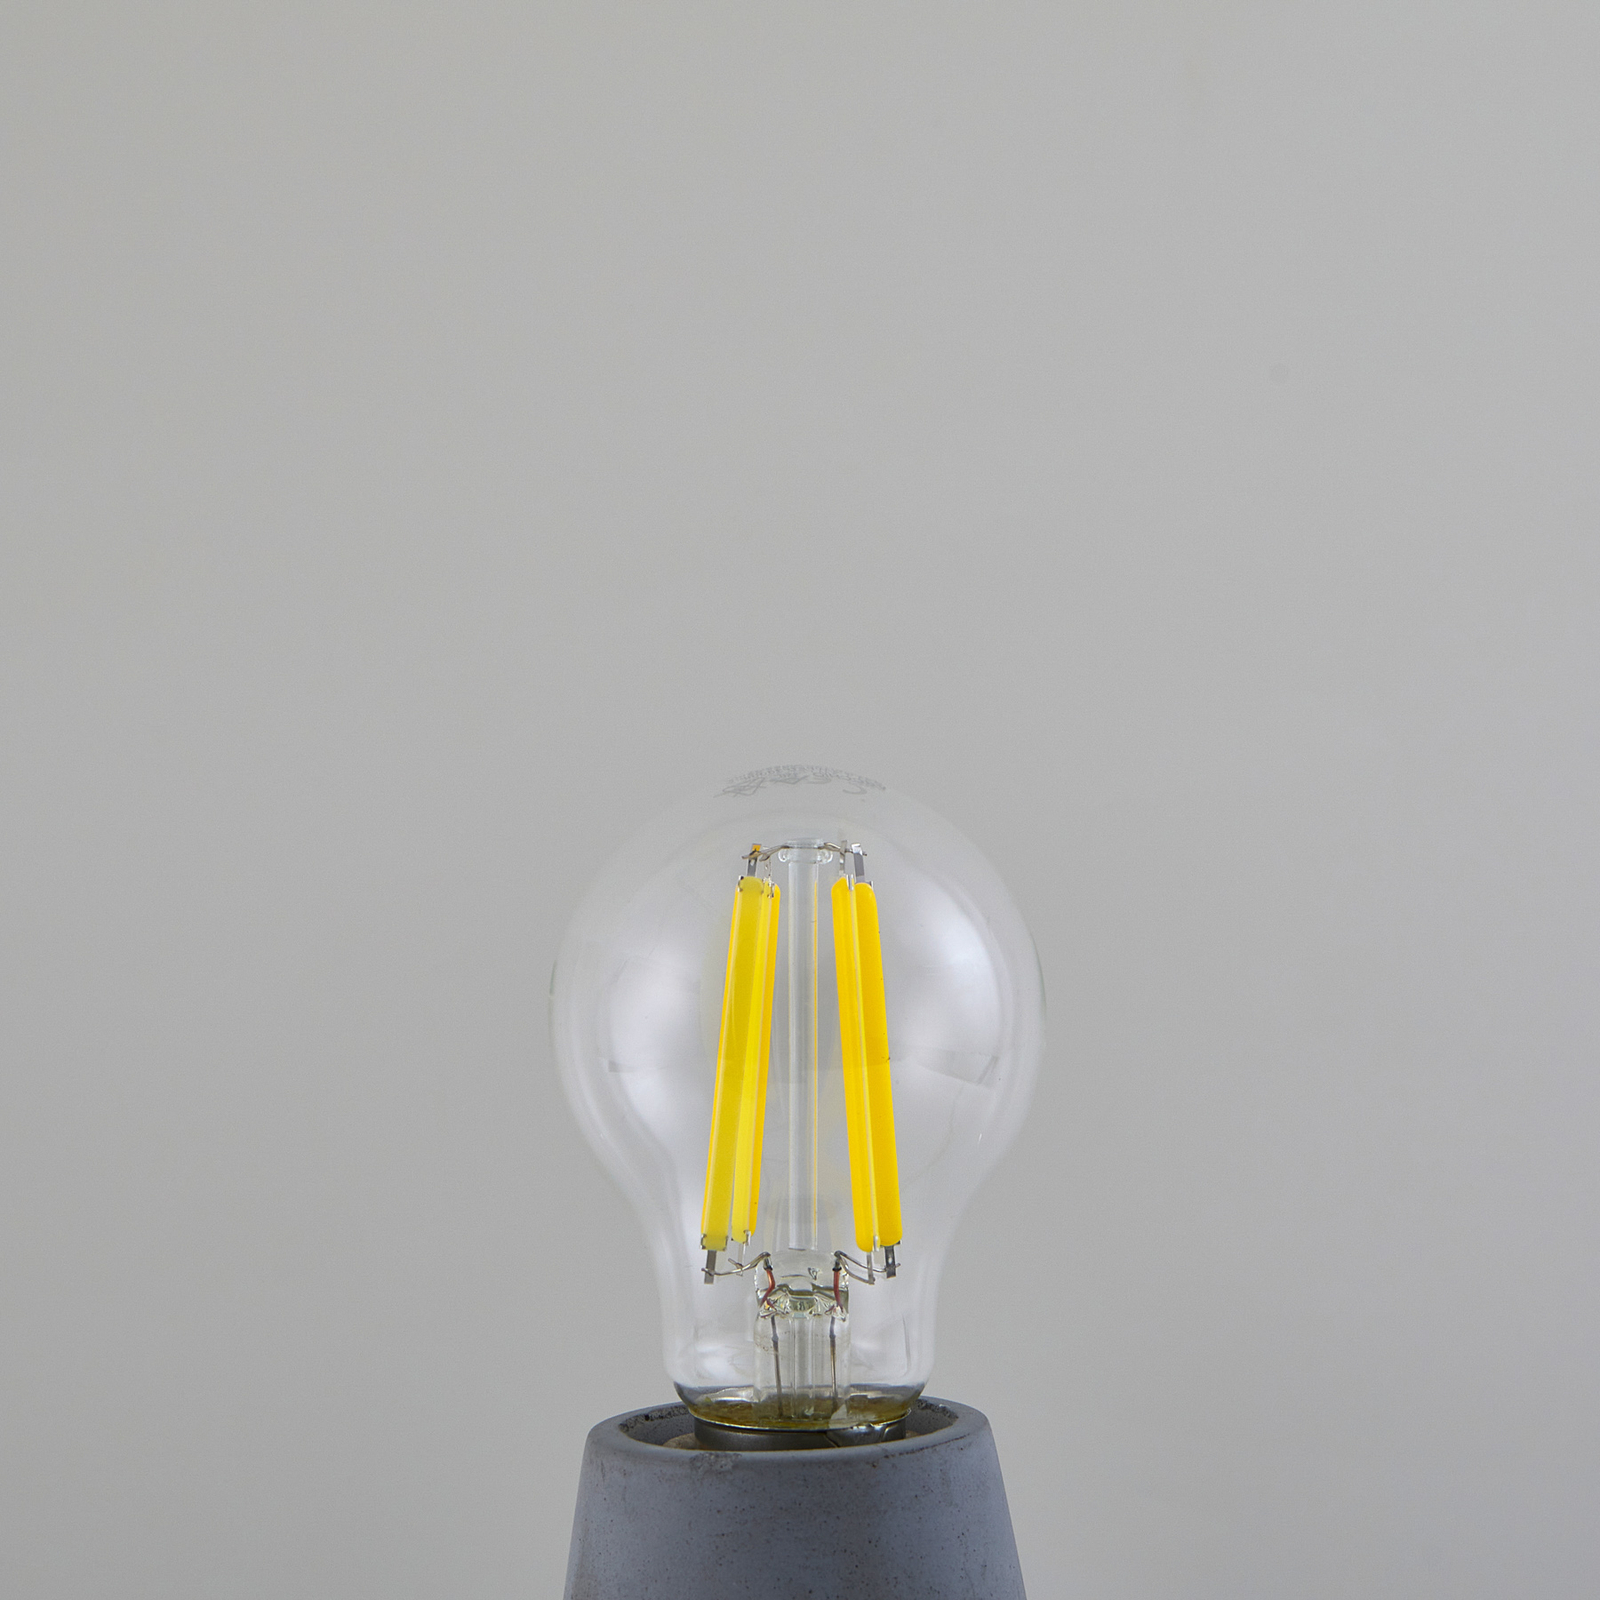 Lâmpada de incandescência LED, transparente, E27, 7,2 W, 3000K, 1521 lm